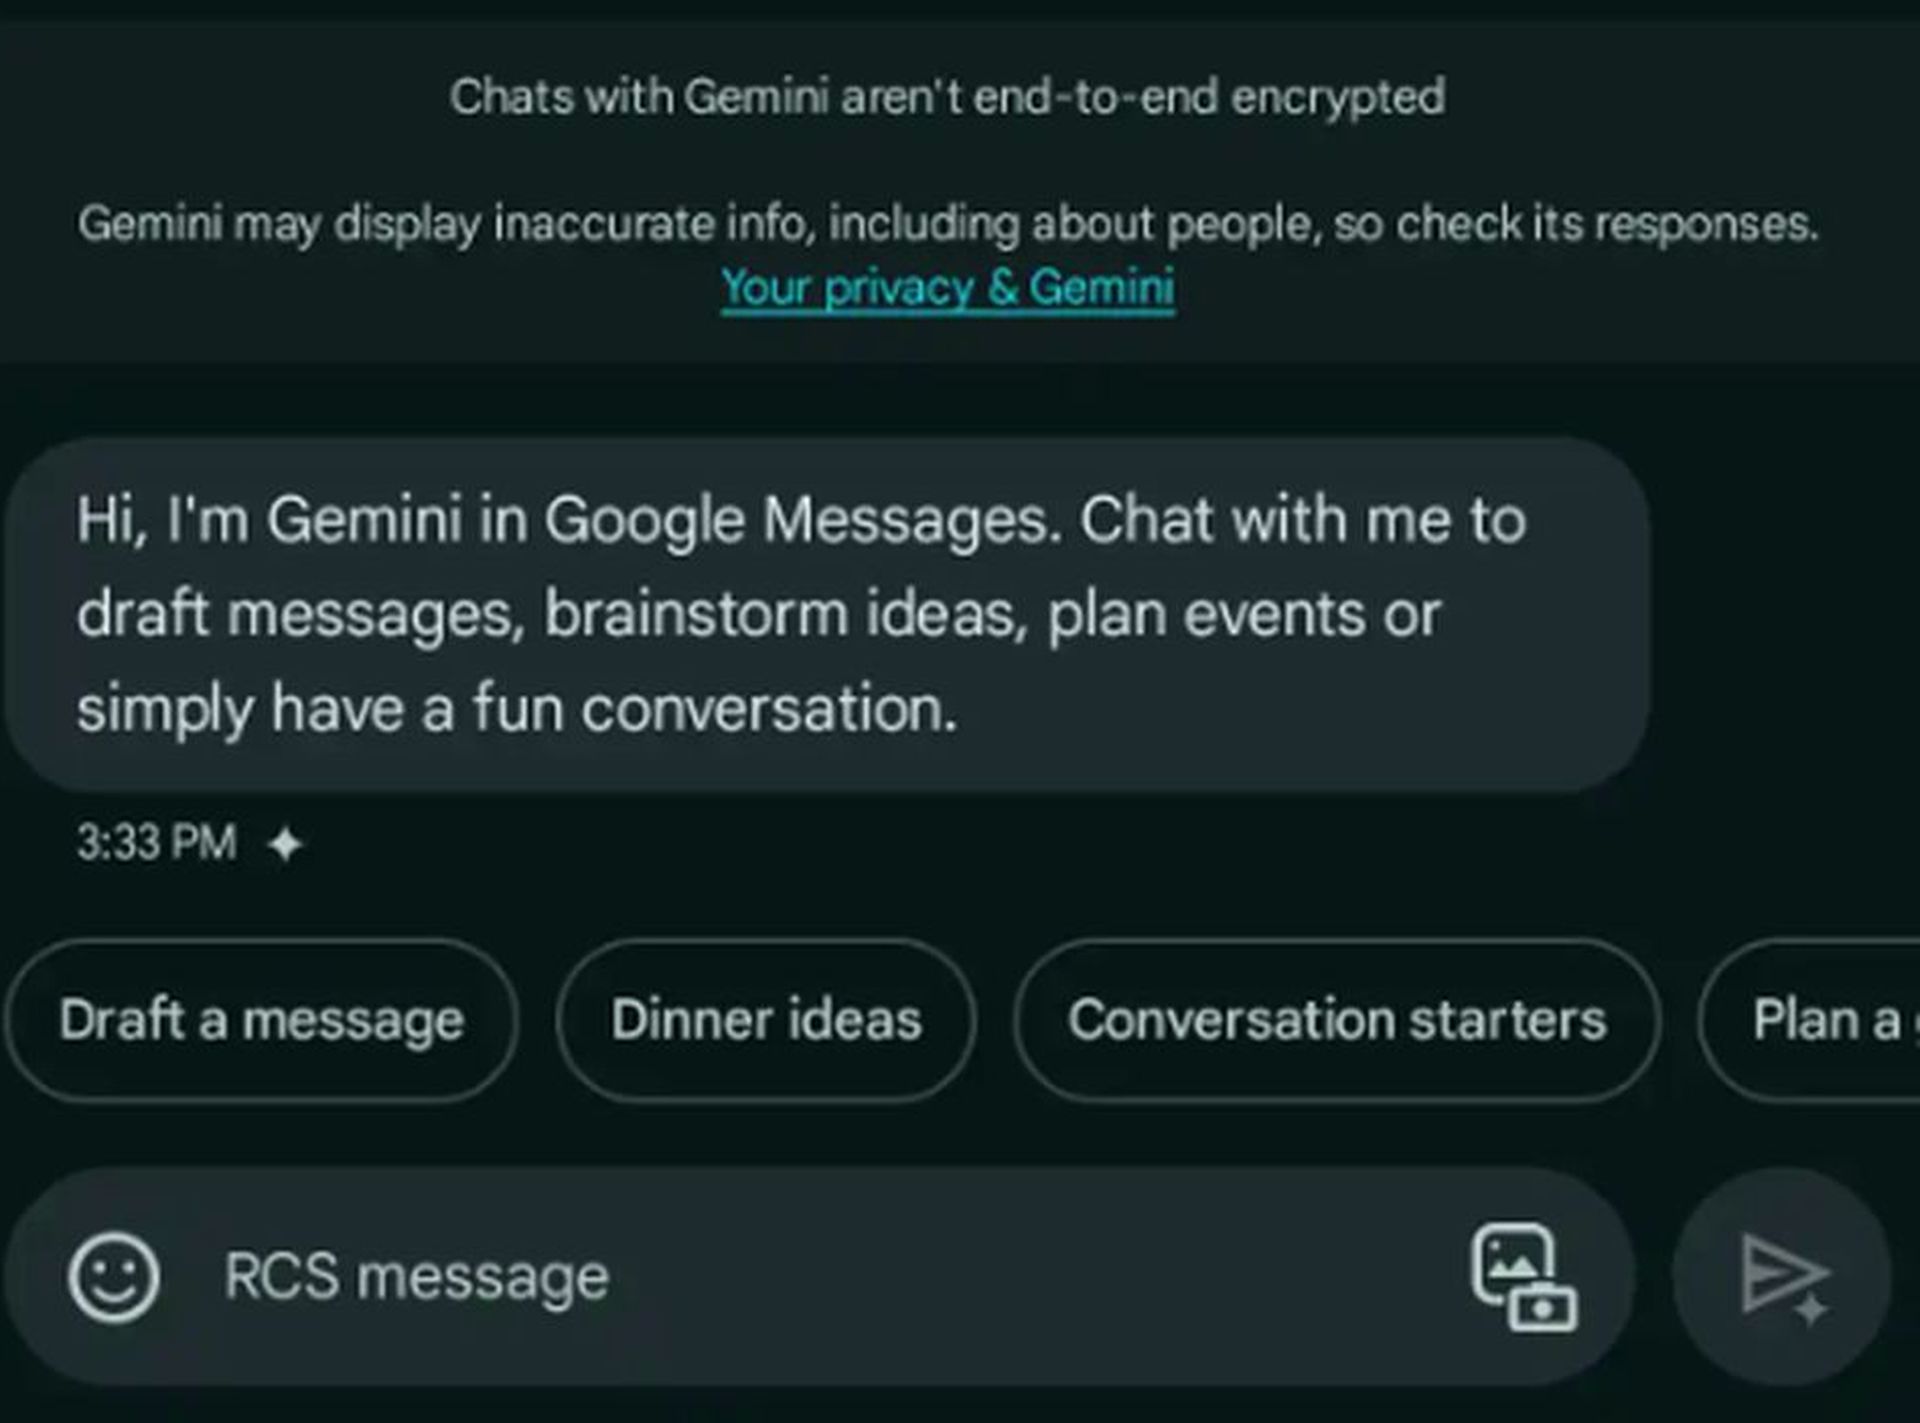 Come utilizzare Gemini AI in Google Messaggi: sblocca la potenza dei suggerimenti e delle funzionalità di messaggistica di Gemini.  Esplora ora!